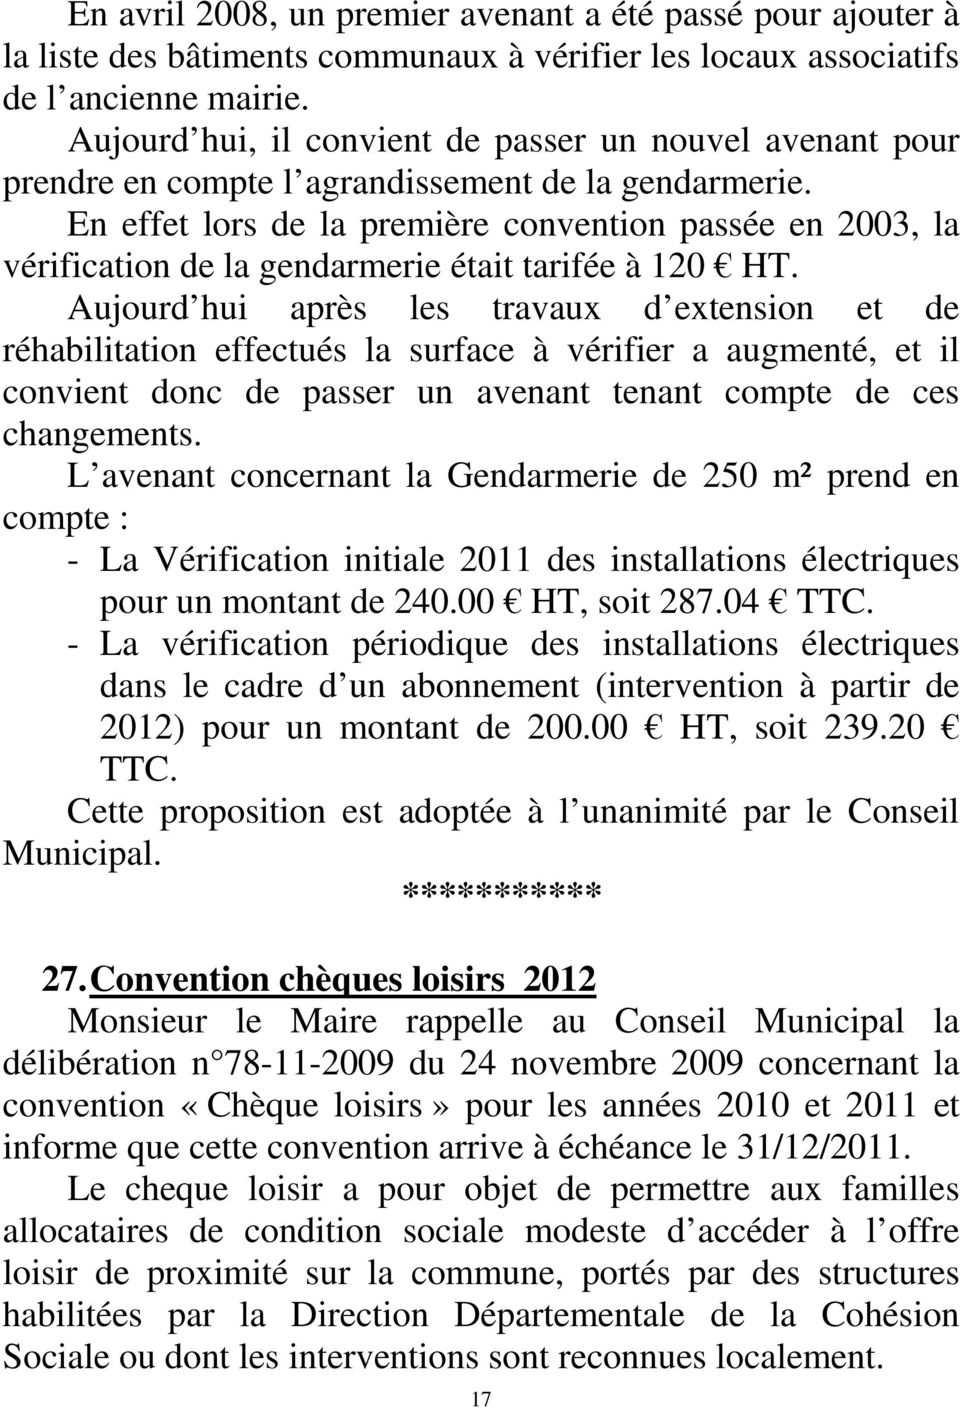 En effet lors de la première convention passée en 2003, la vérification de la gendarmerie était tarifée à 120 HT.